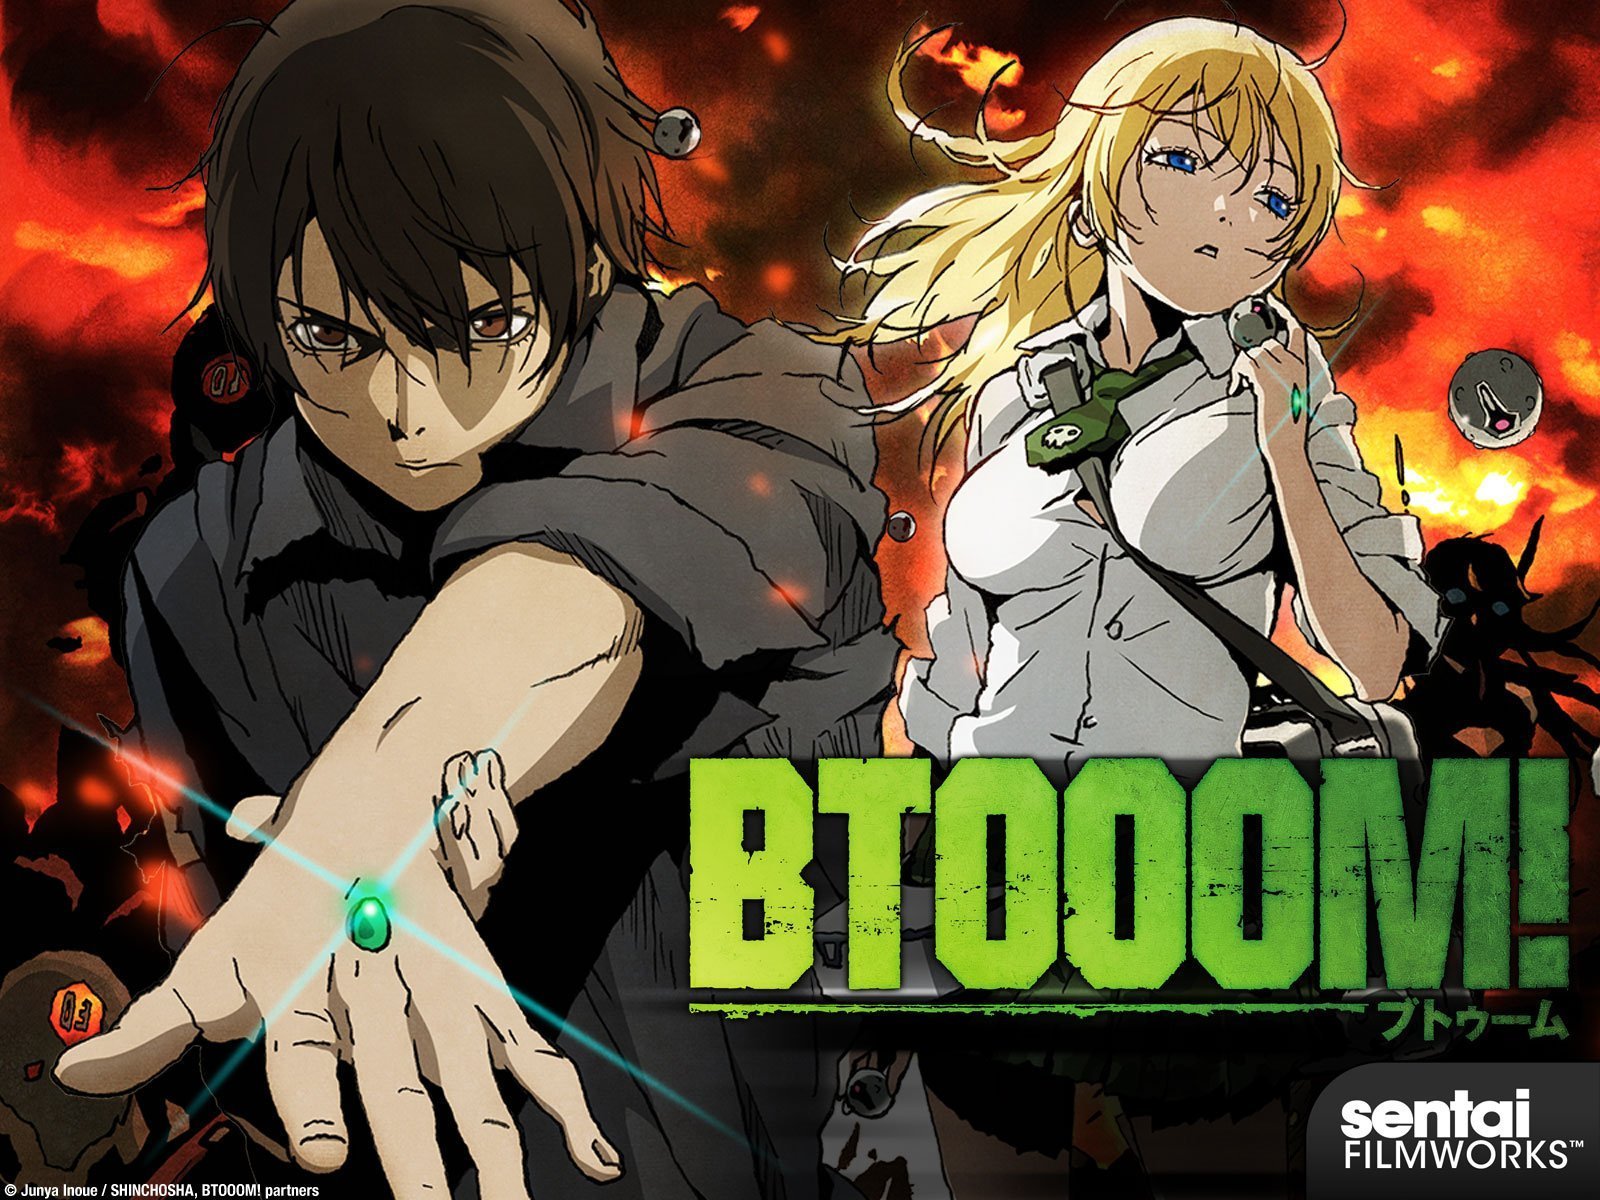 BTOOM! - Adult anime series